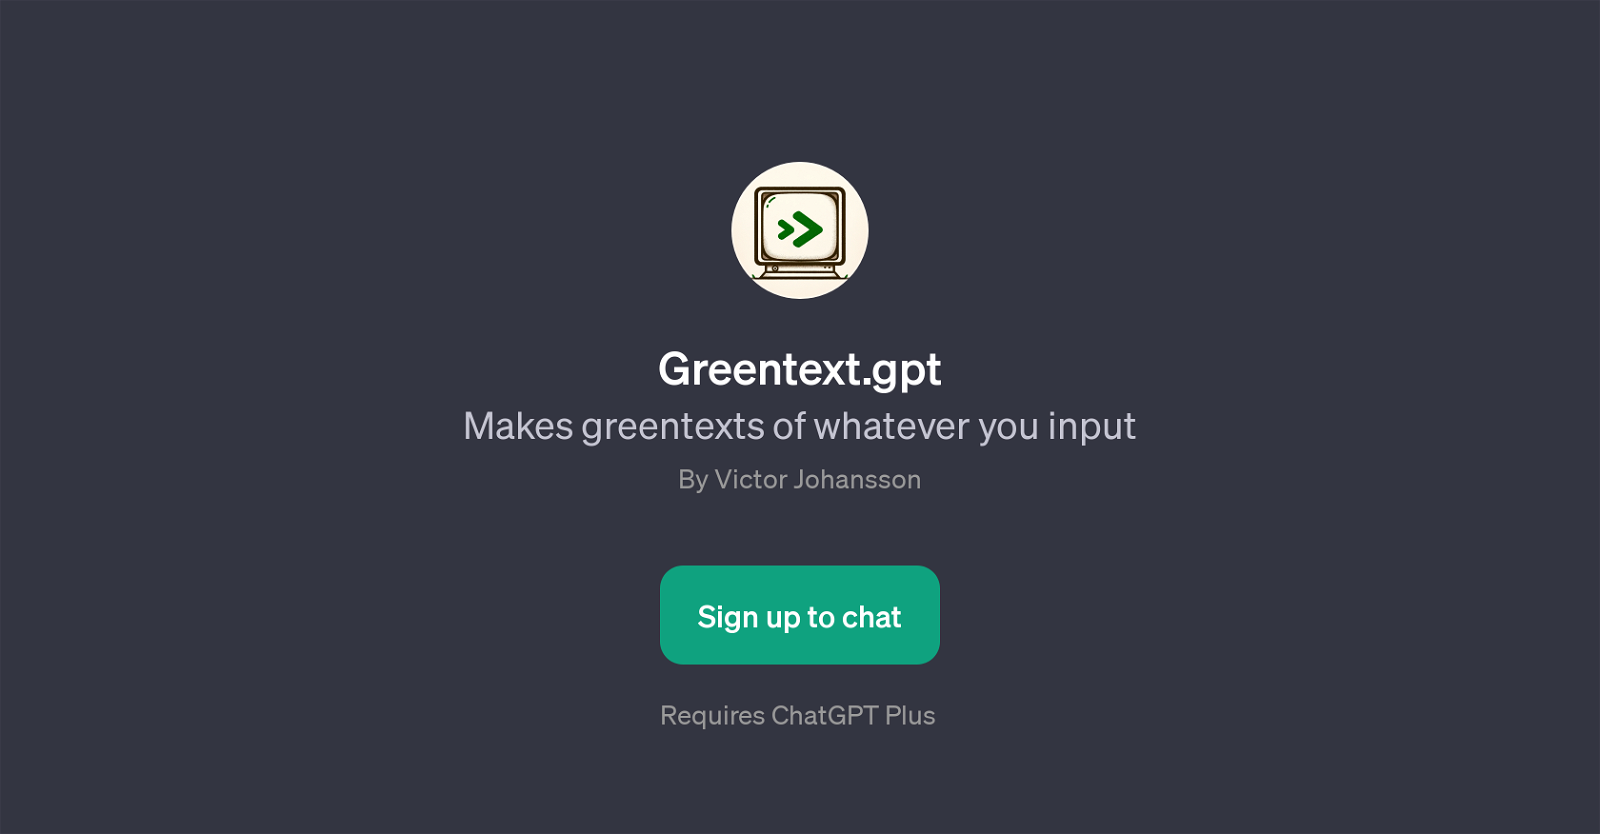 Greentext.gpt website